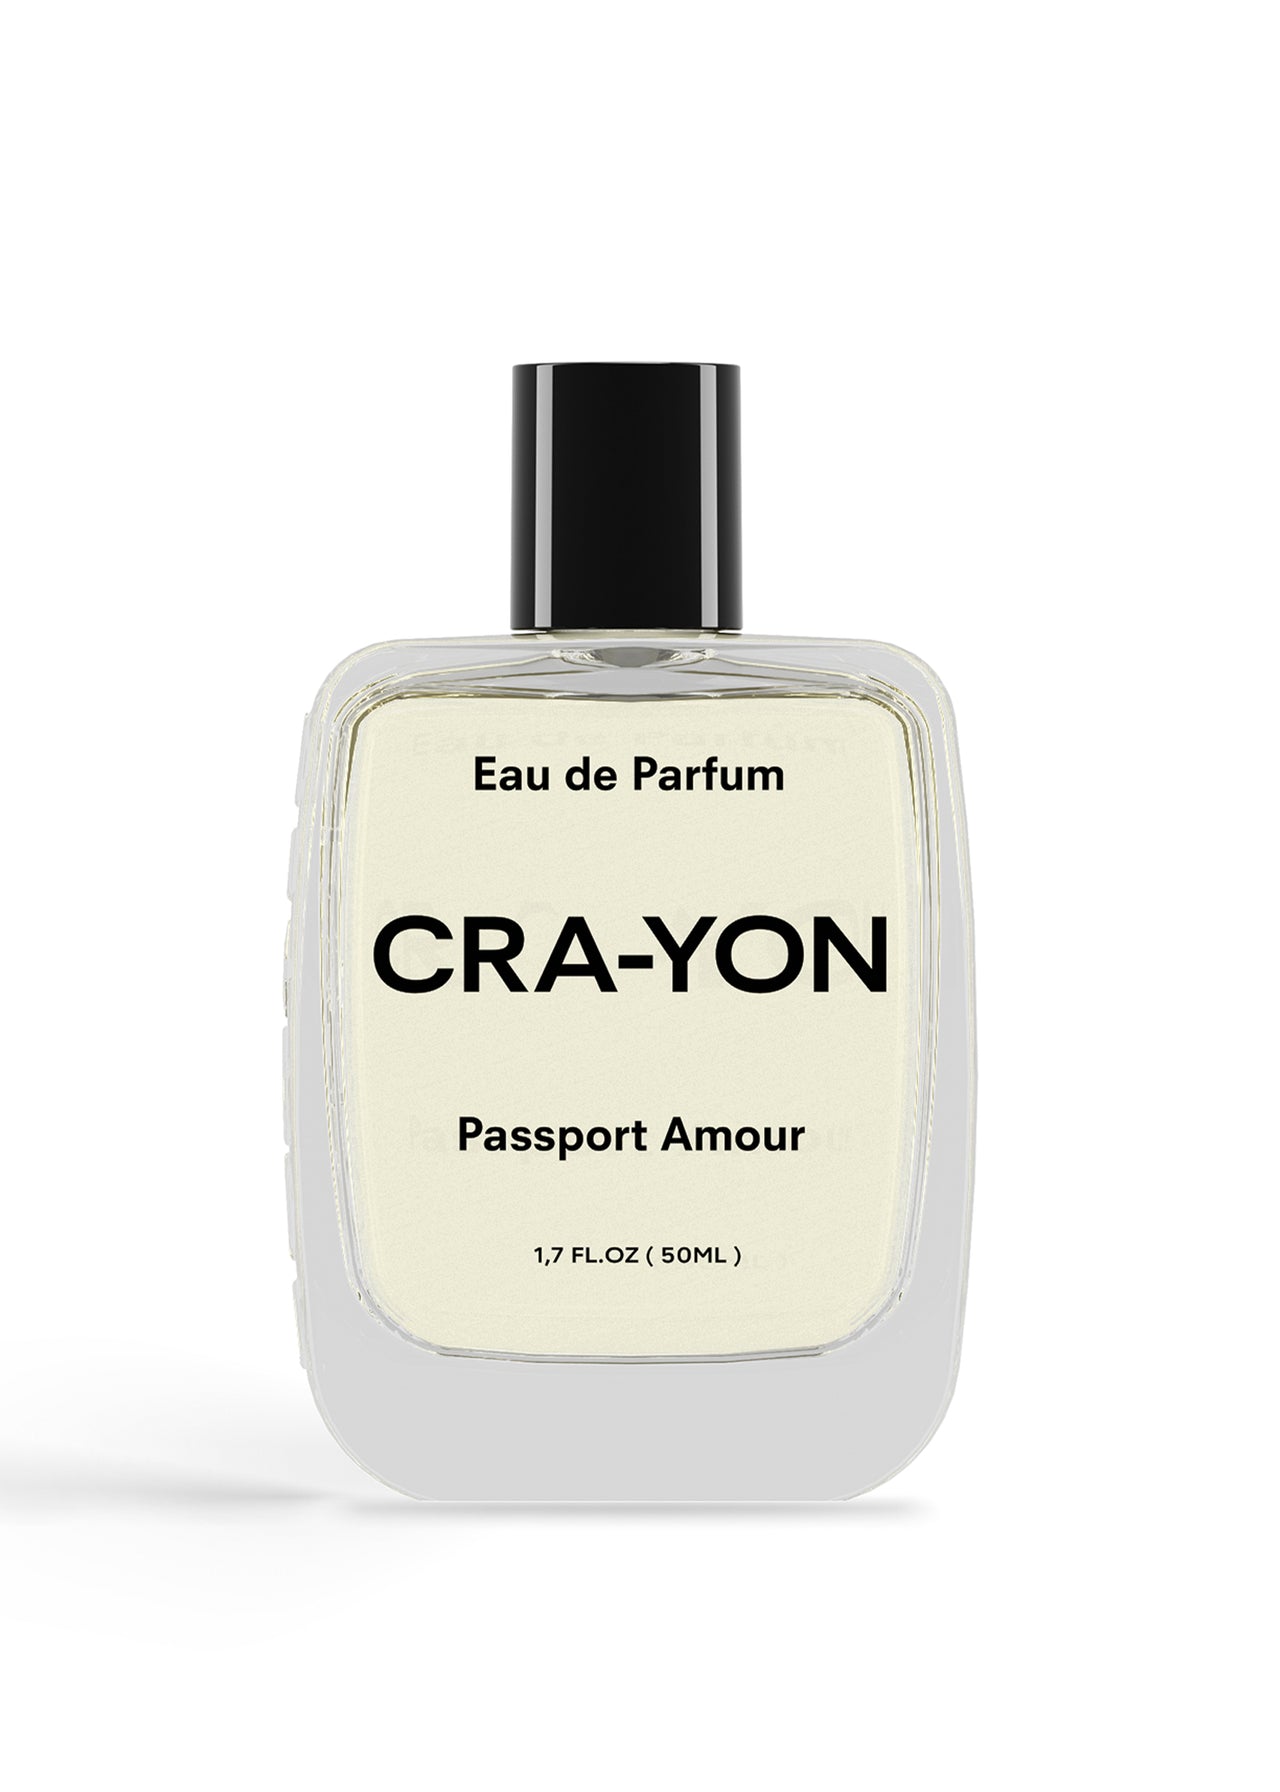 CRA-YON Passport Amour Eau de Parfum